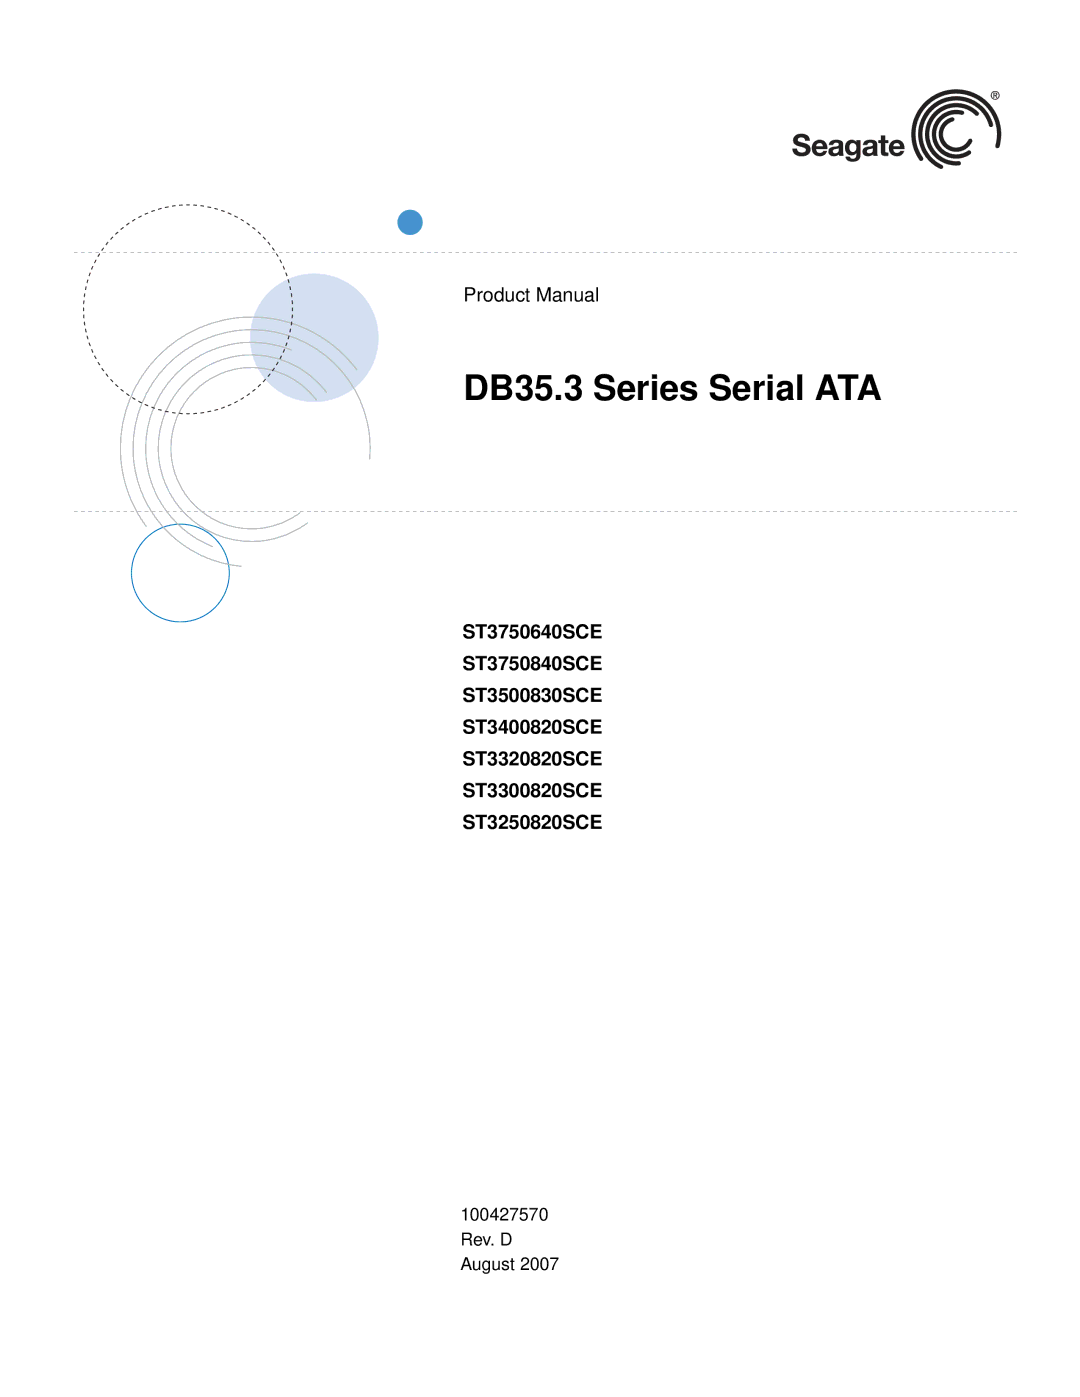 Seagate ST3300820SCE, ST3250820SCE, ST3750640SCE, ST3750840SCE, ST3400820SCE, ST3320820SCE manual DB35.3 Series Serial ATA 